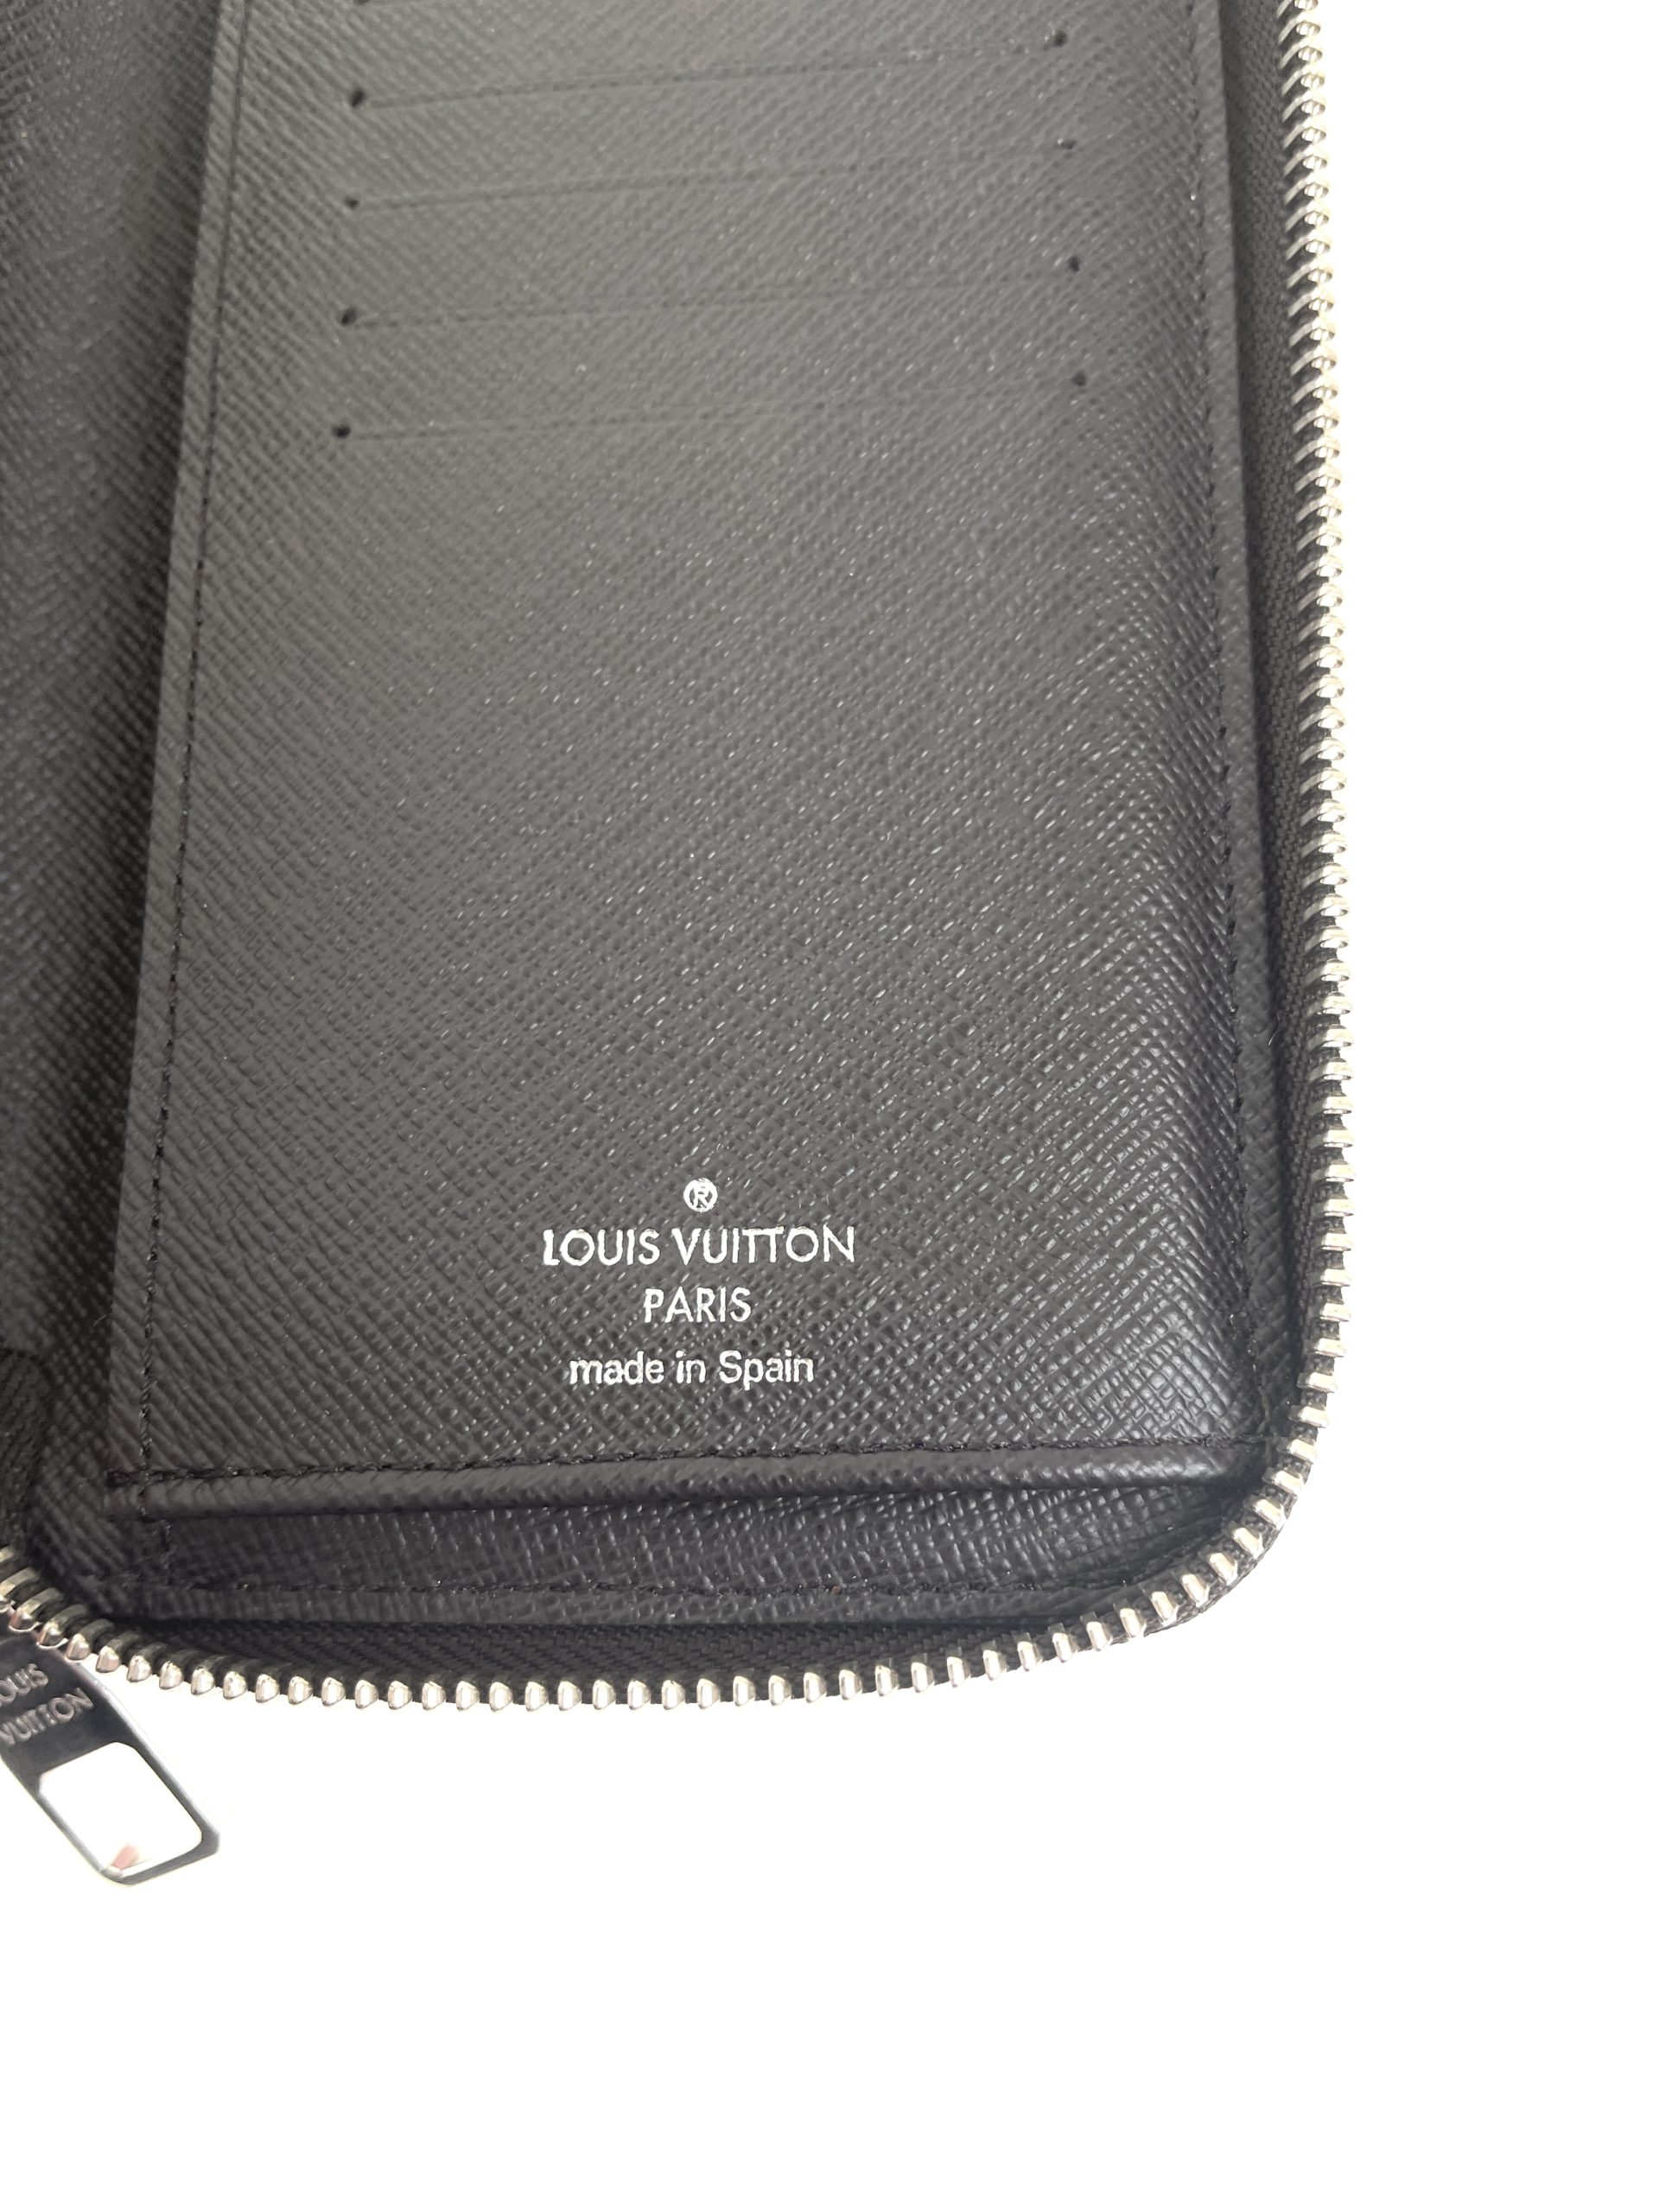 Louis Vuitton Ebene Vertical Zippy Wallet - A World Of Goods For